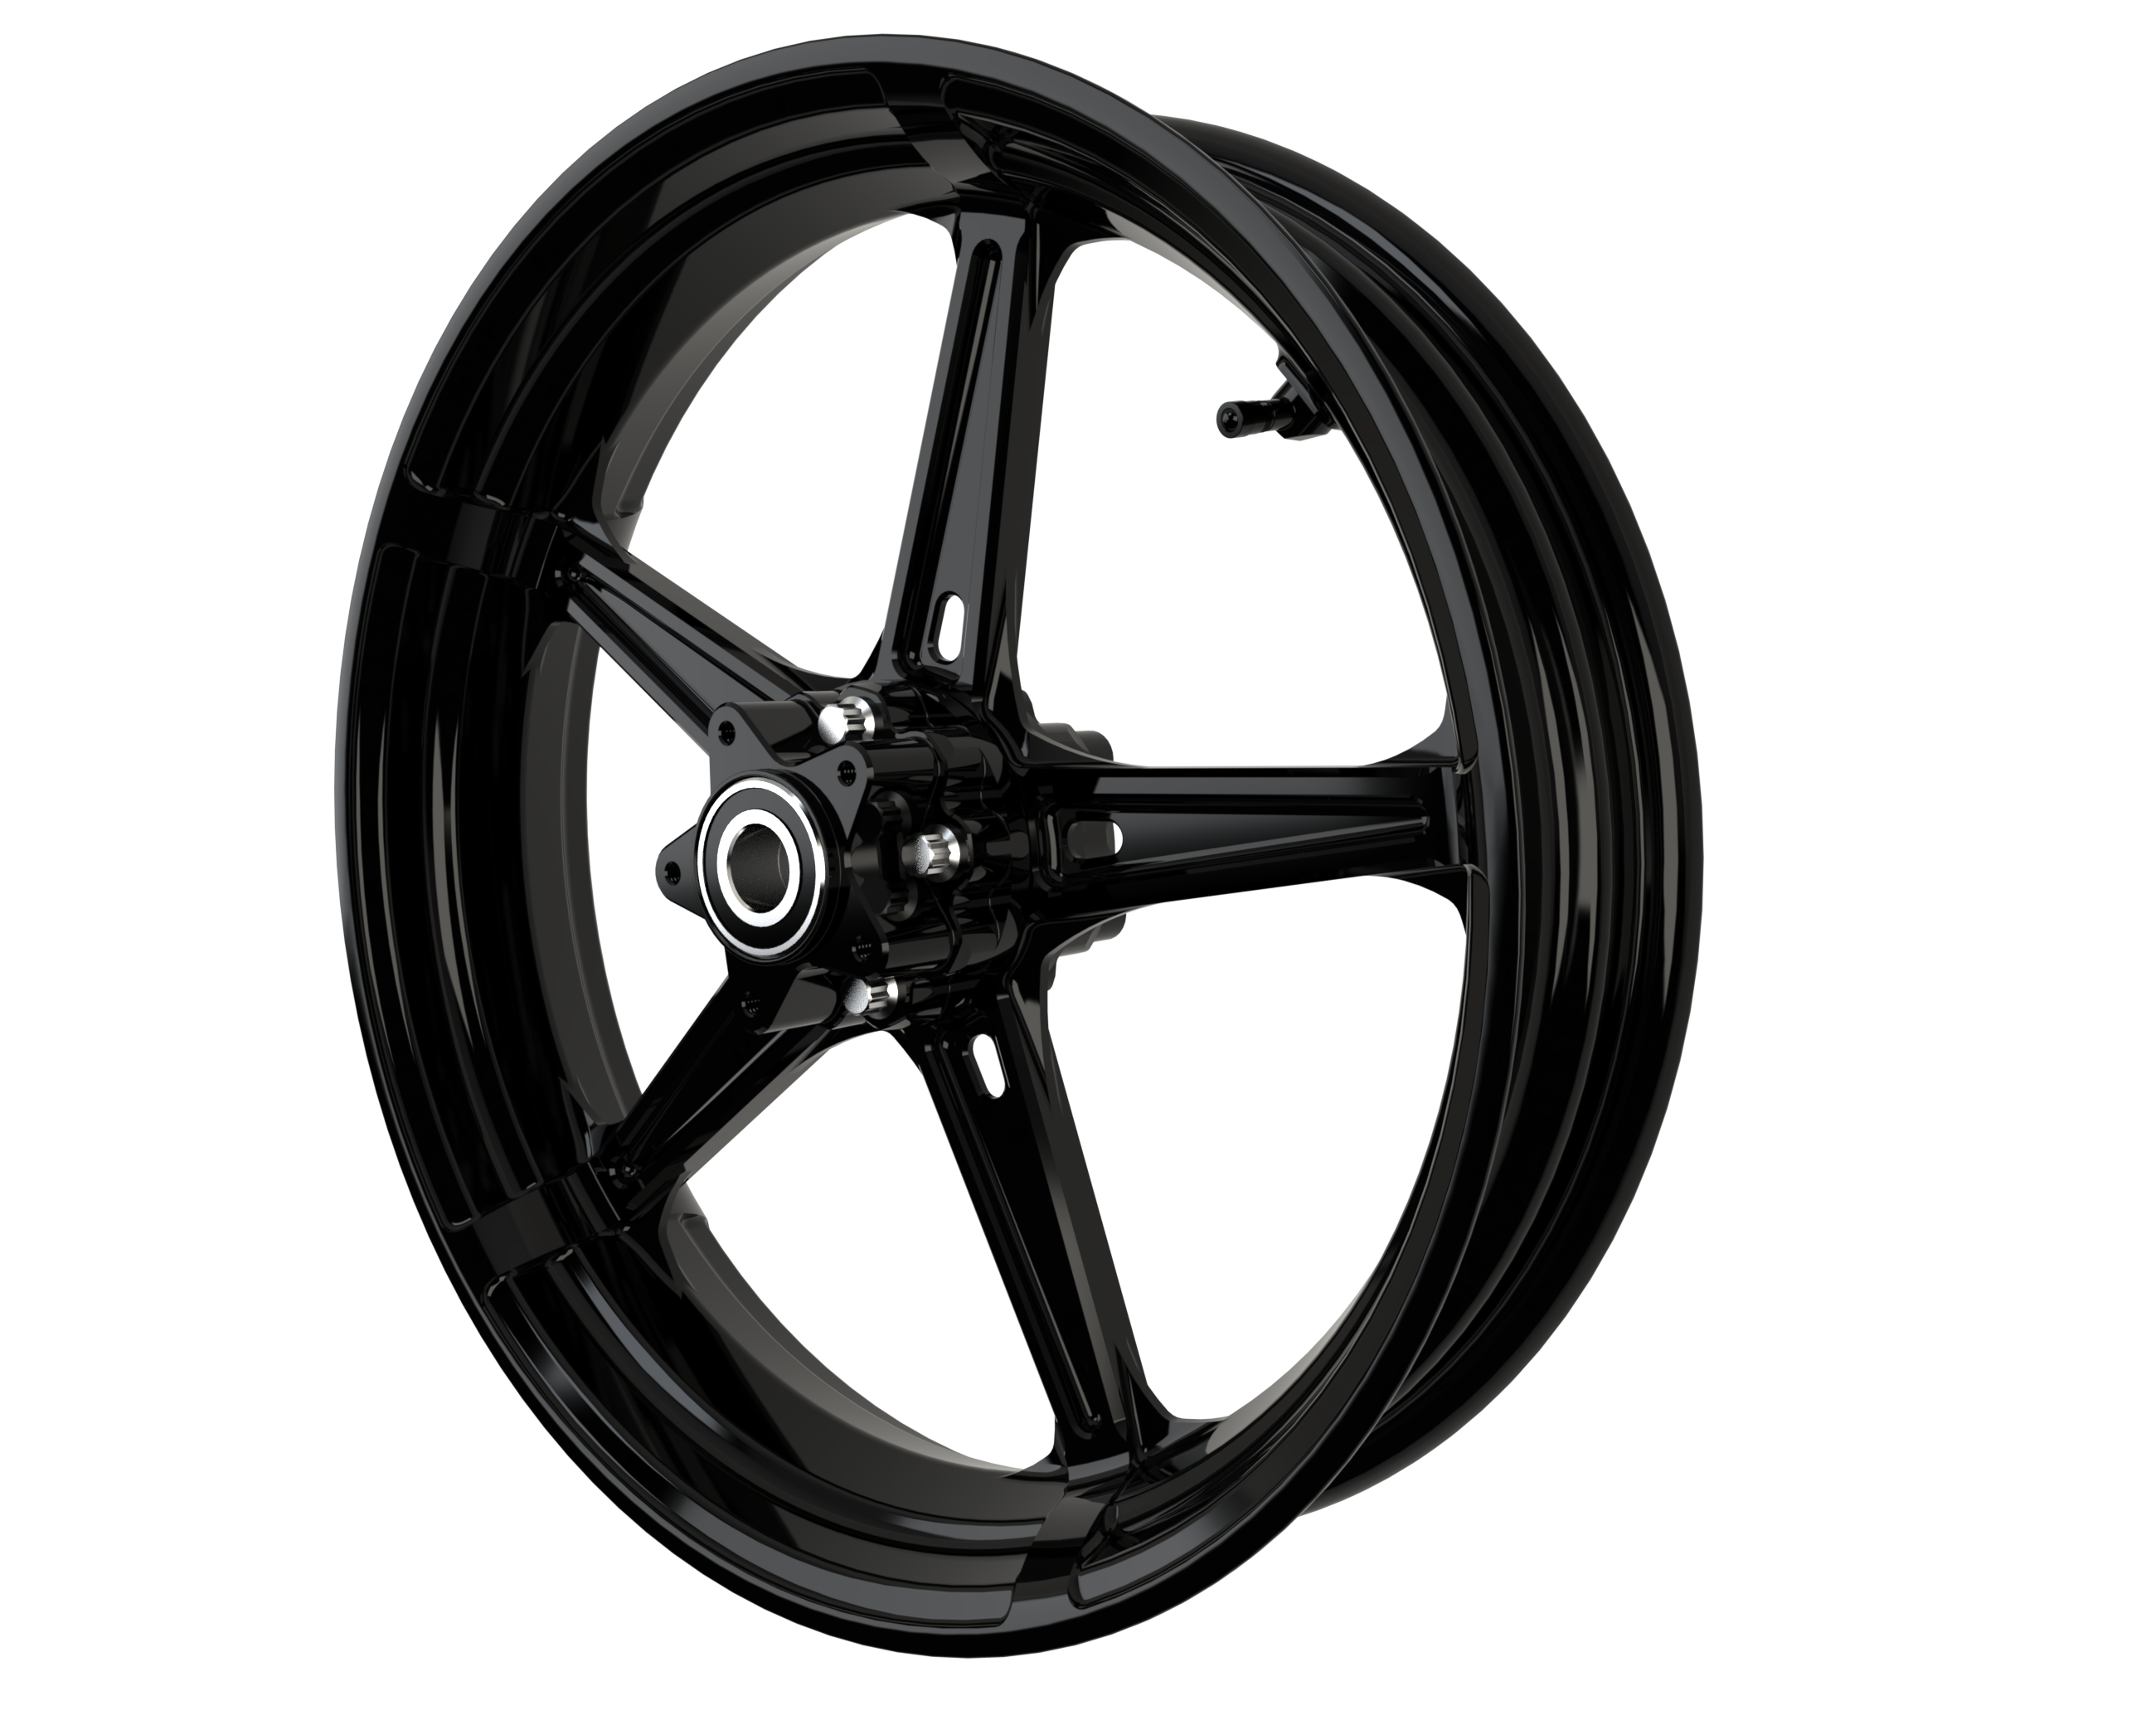 RaceLite 17x3.5 wheel all black